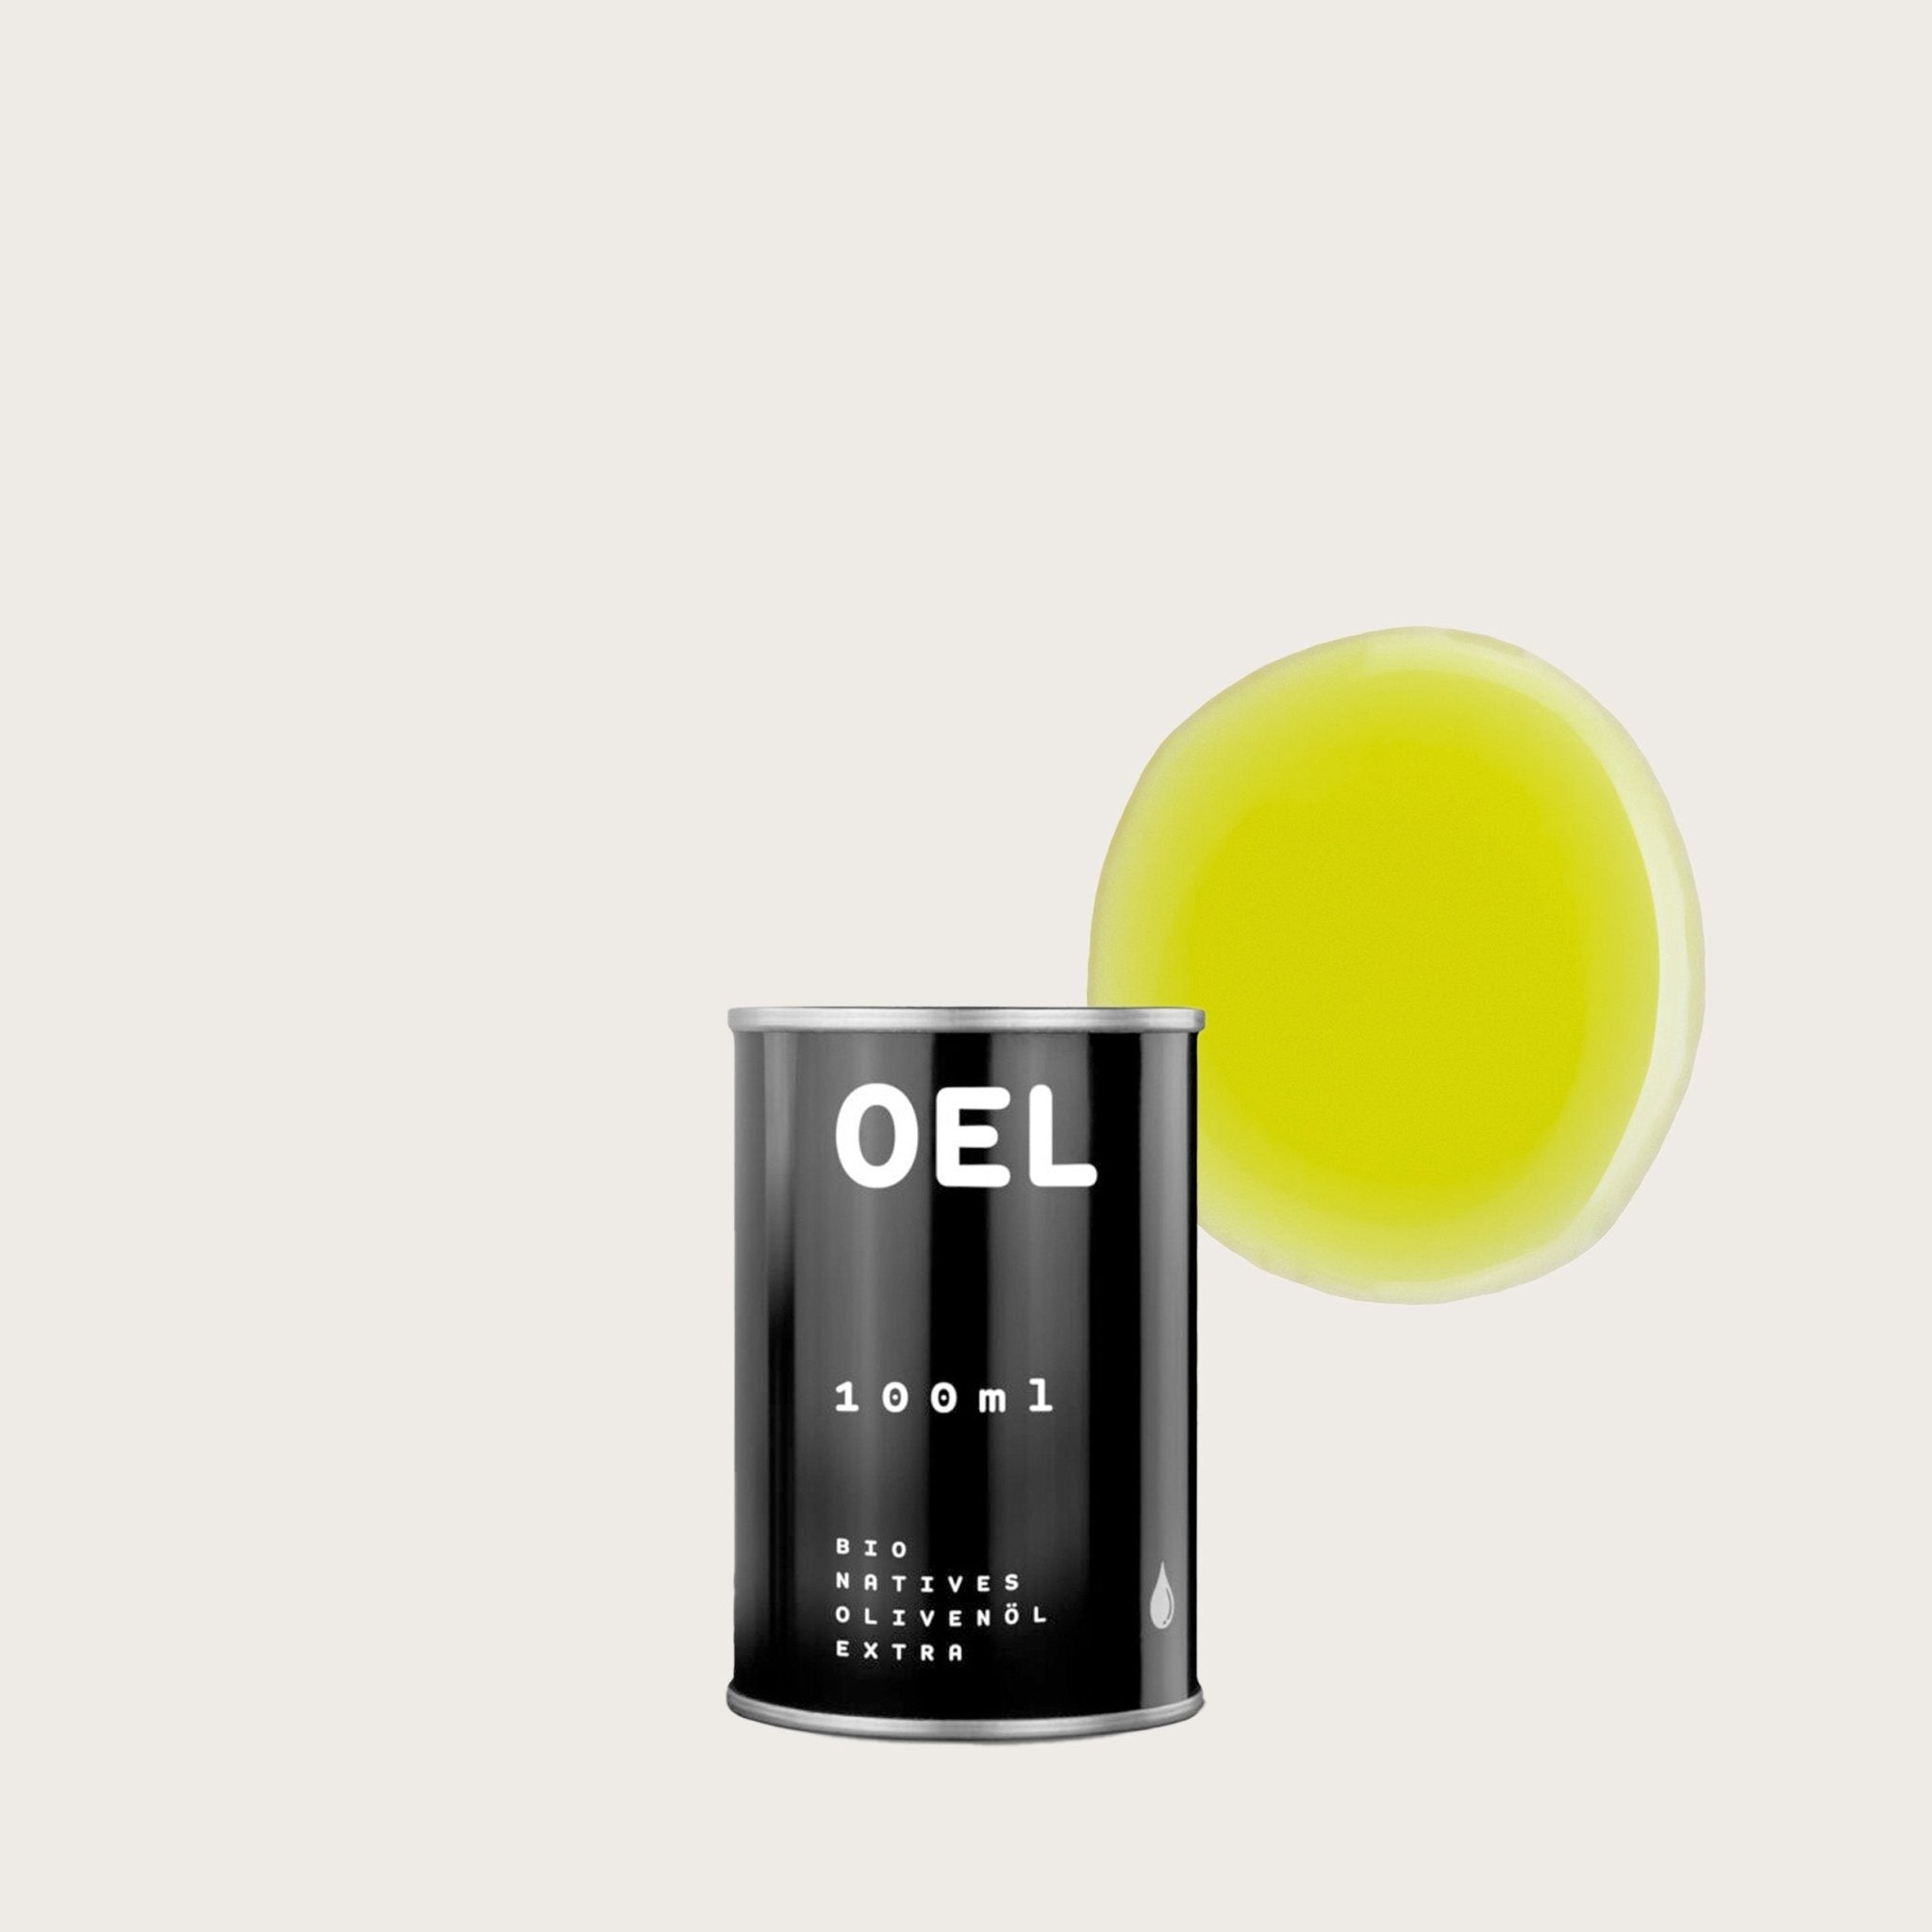 OEL 100 ml - Bio Natives Olivenöl Extra aus Griechenland - OEL - Griechische Produkte und Olivenöl - Bestandsartikel red. MWST (7%) - OEL - Griechische Produkte und Olivenöl